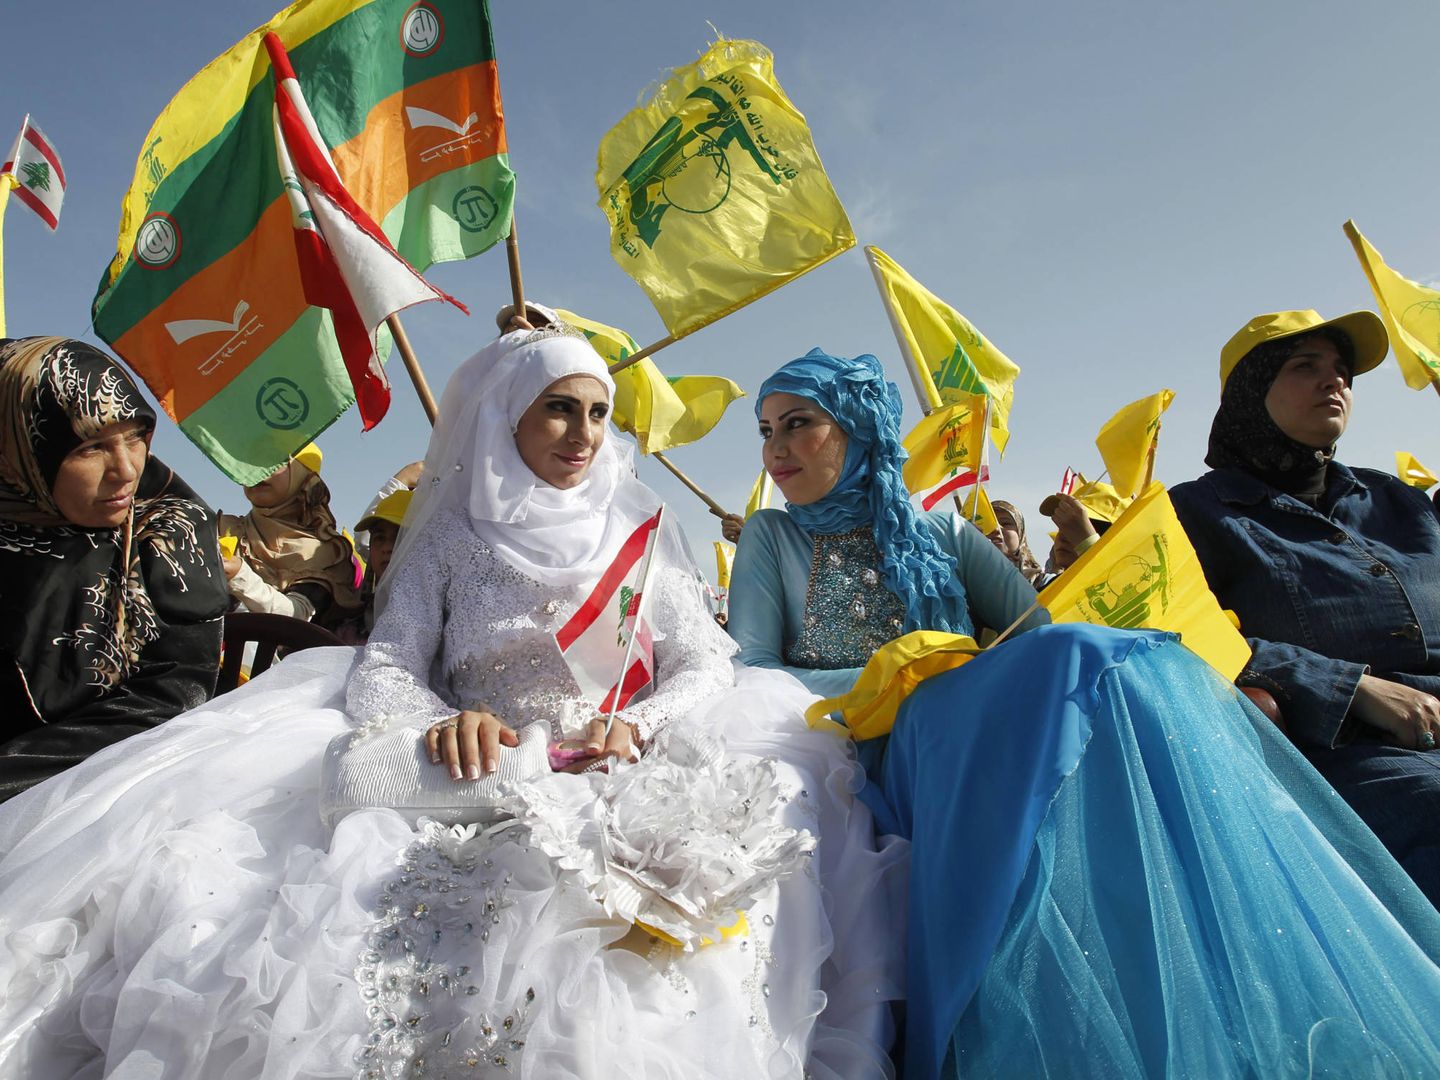 Seguiodres de Hezbolah tras una boda en Bint Jbeil, Líbano. (Reuters)